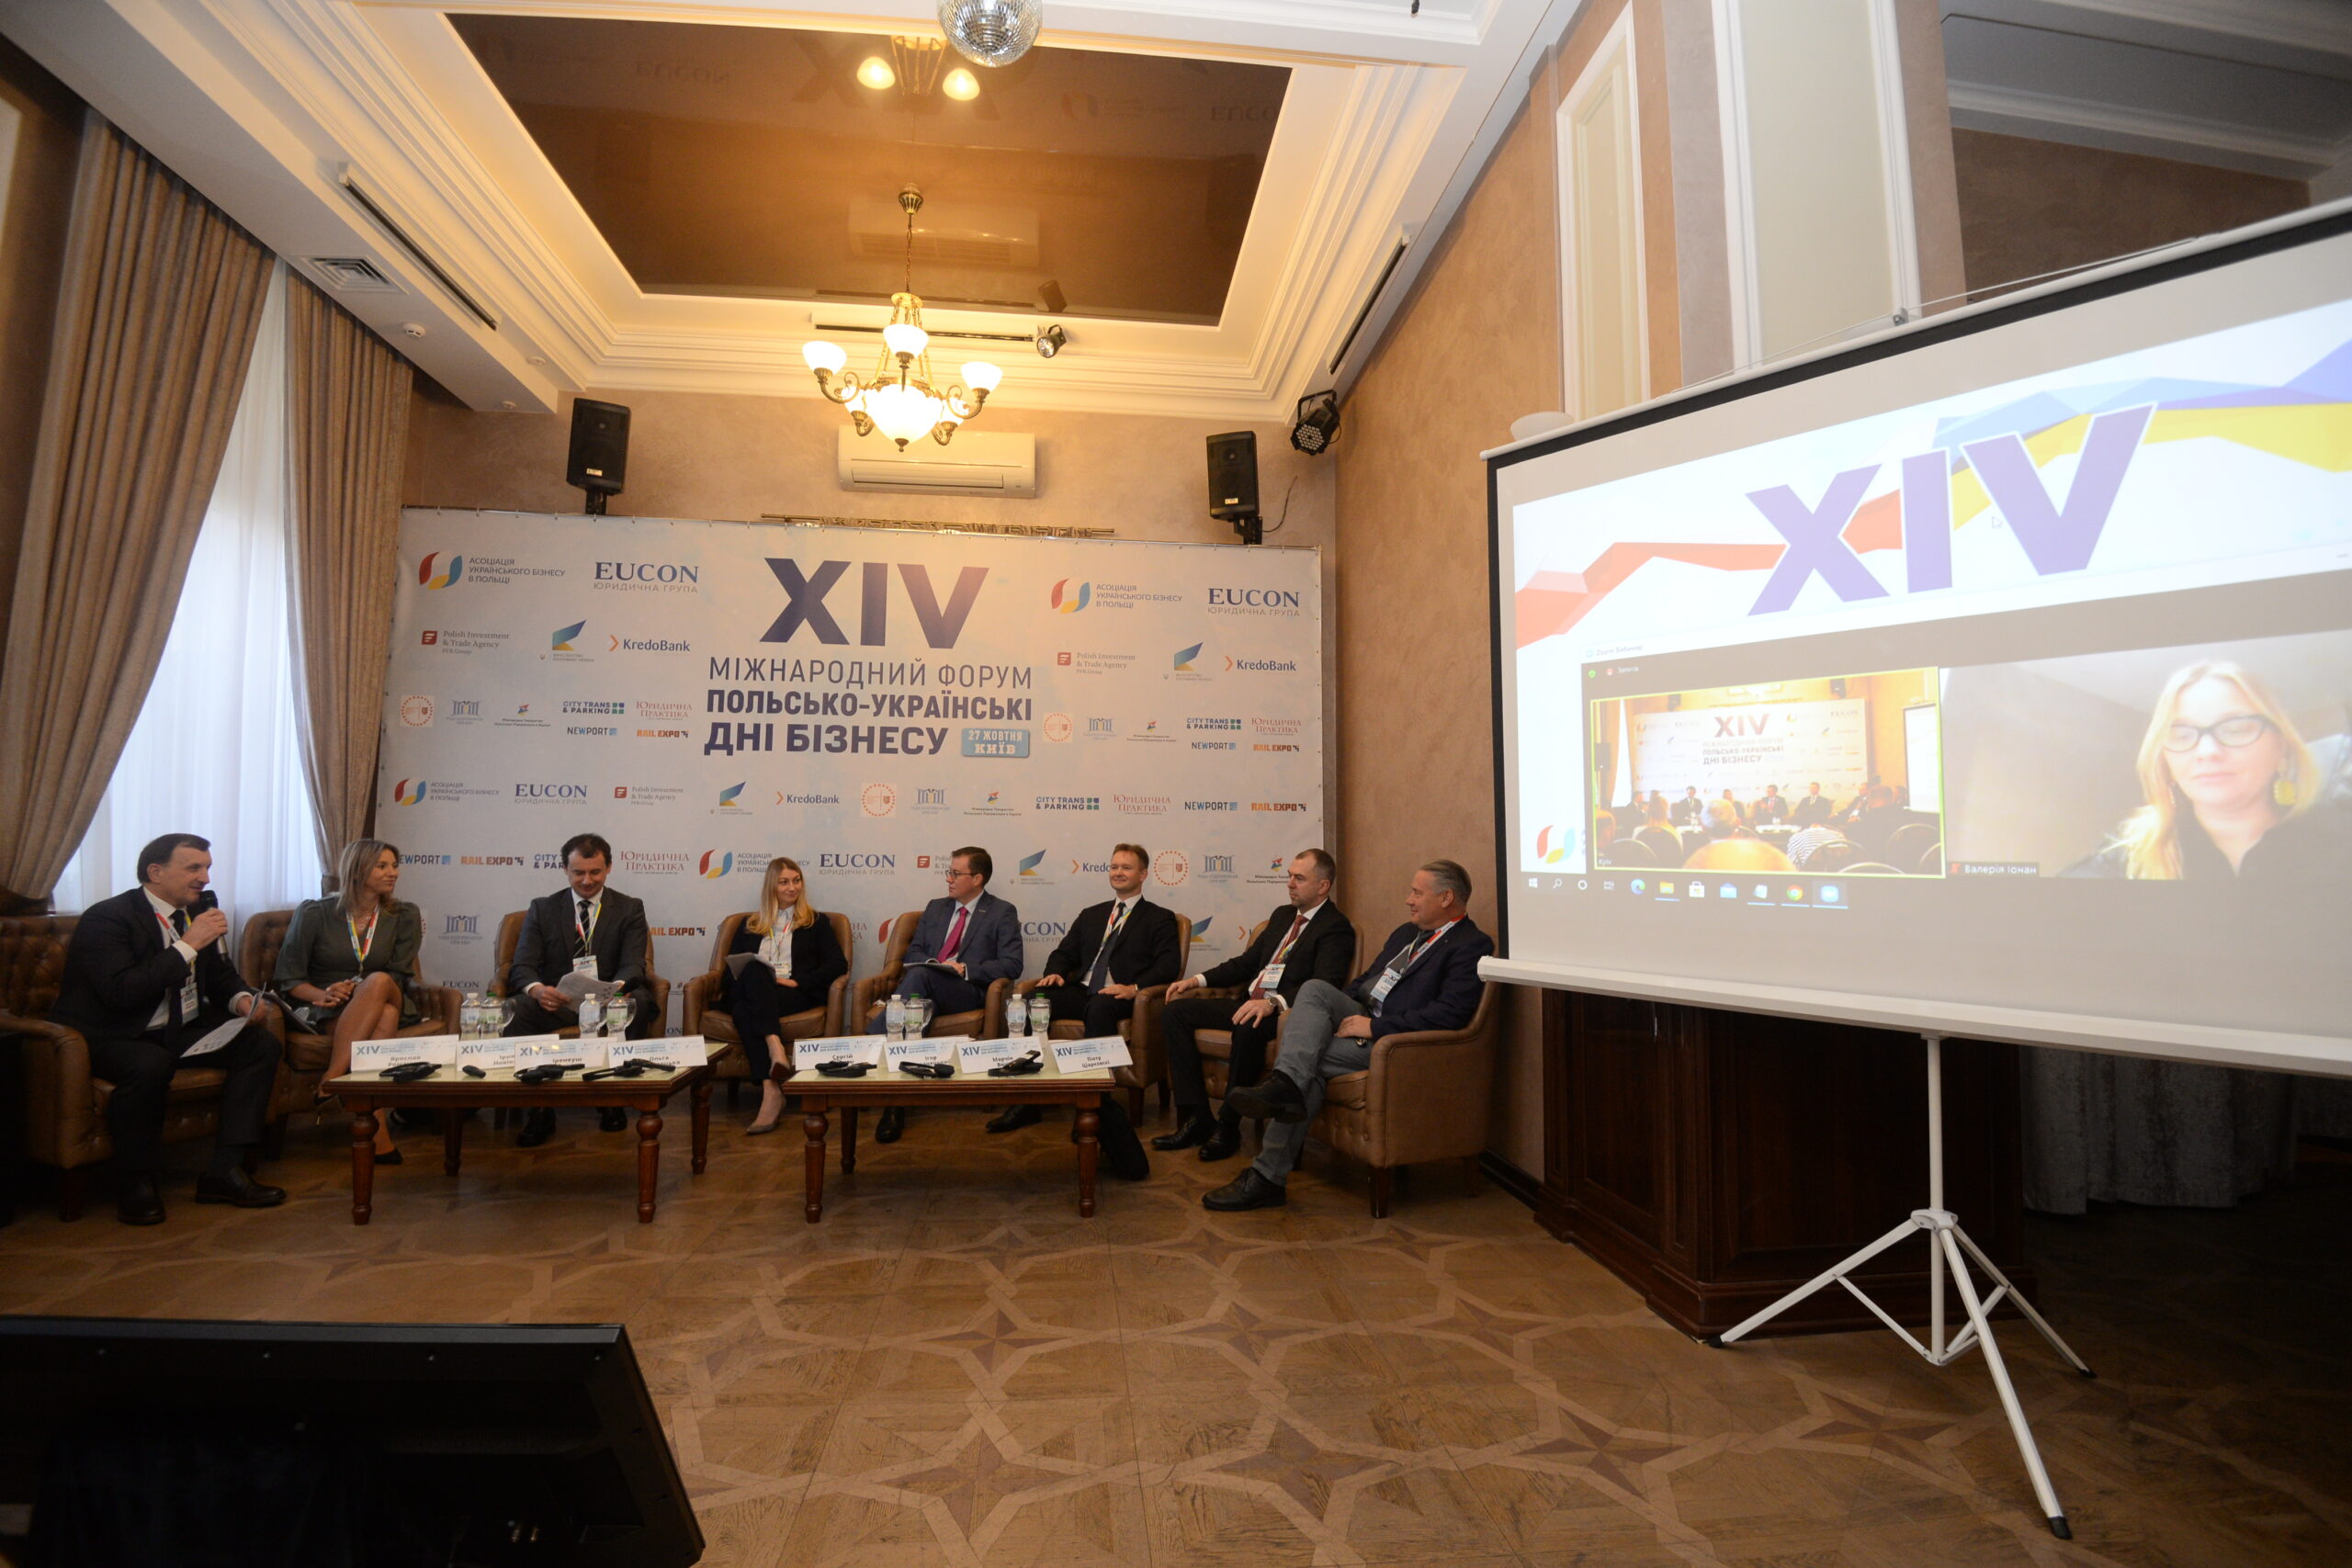 Инвестиции, инфраструктура, промышленность: поиск синергии и новых возможностей. В Киеве состоялся XIV Международный форум «Польско-украинские дни бизнеса»